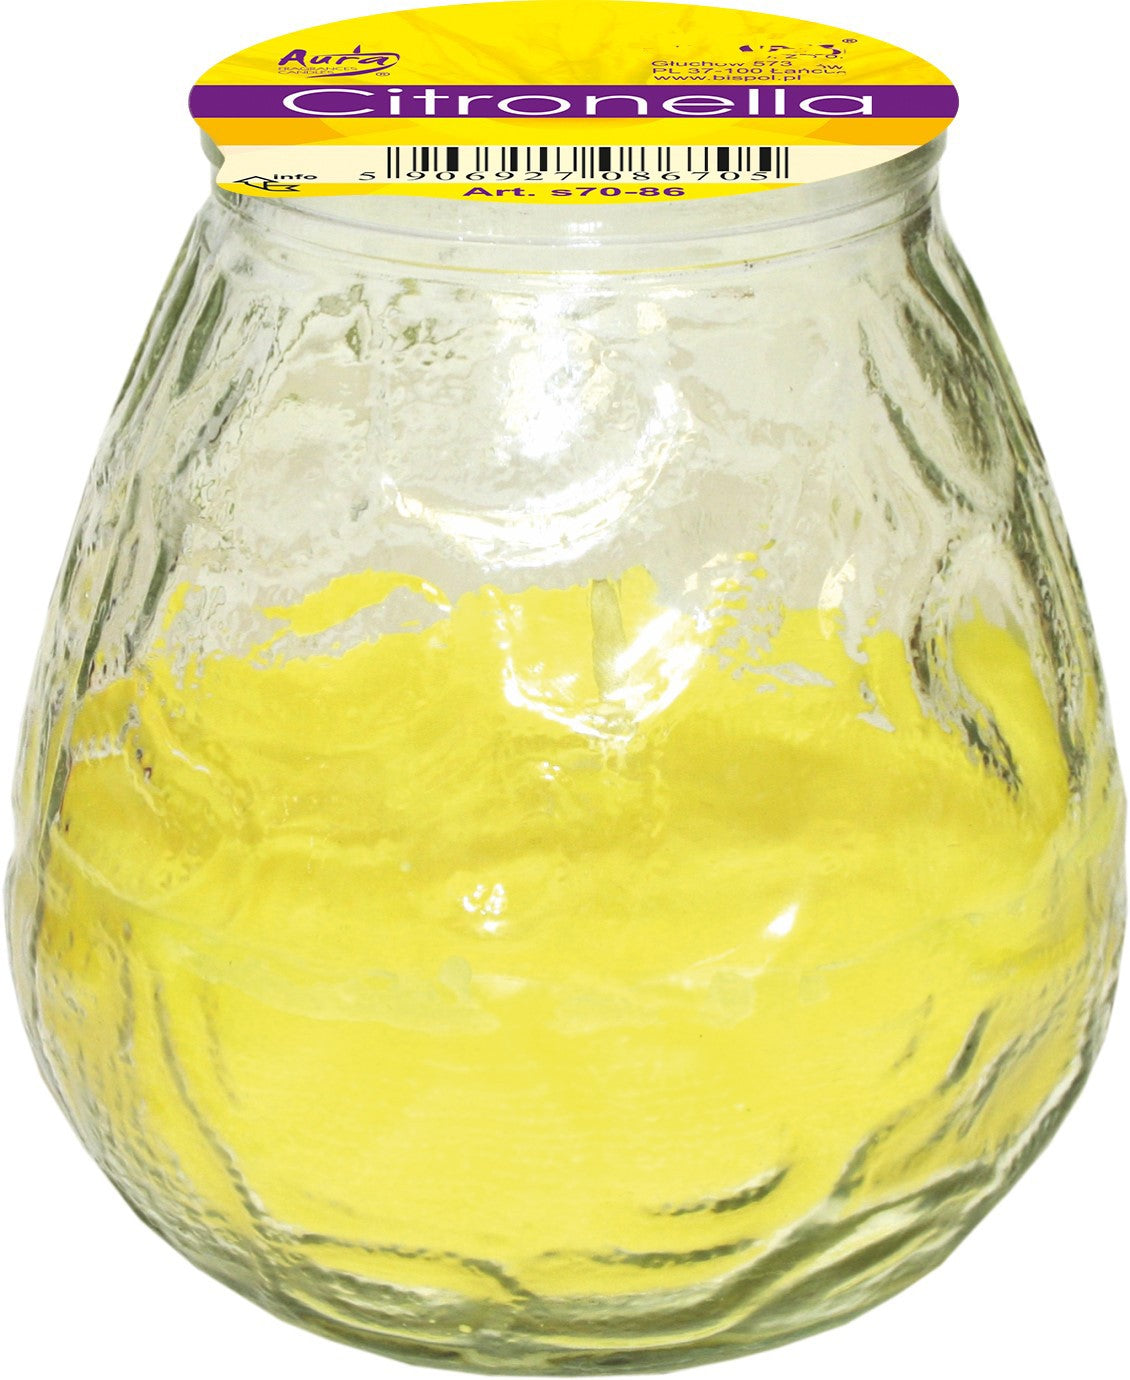 White glass glass "GRAN BISTROT" 105 x 100 mm citronella